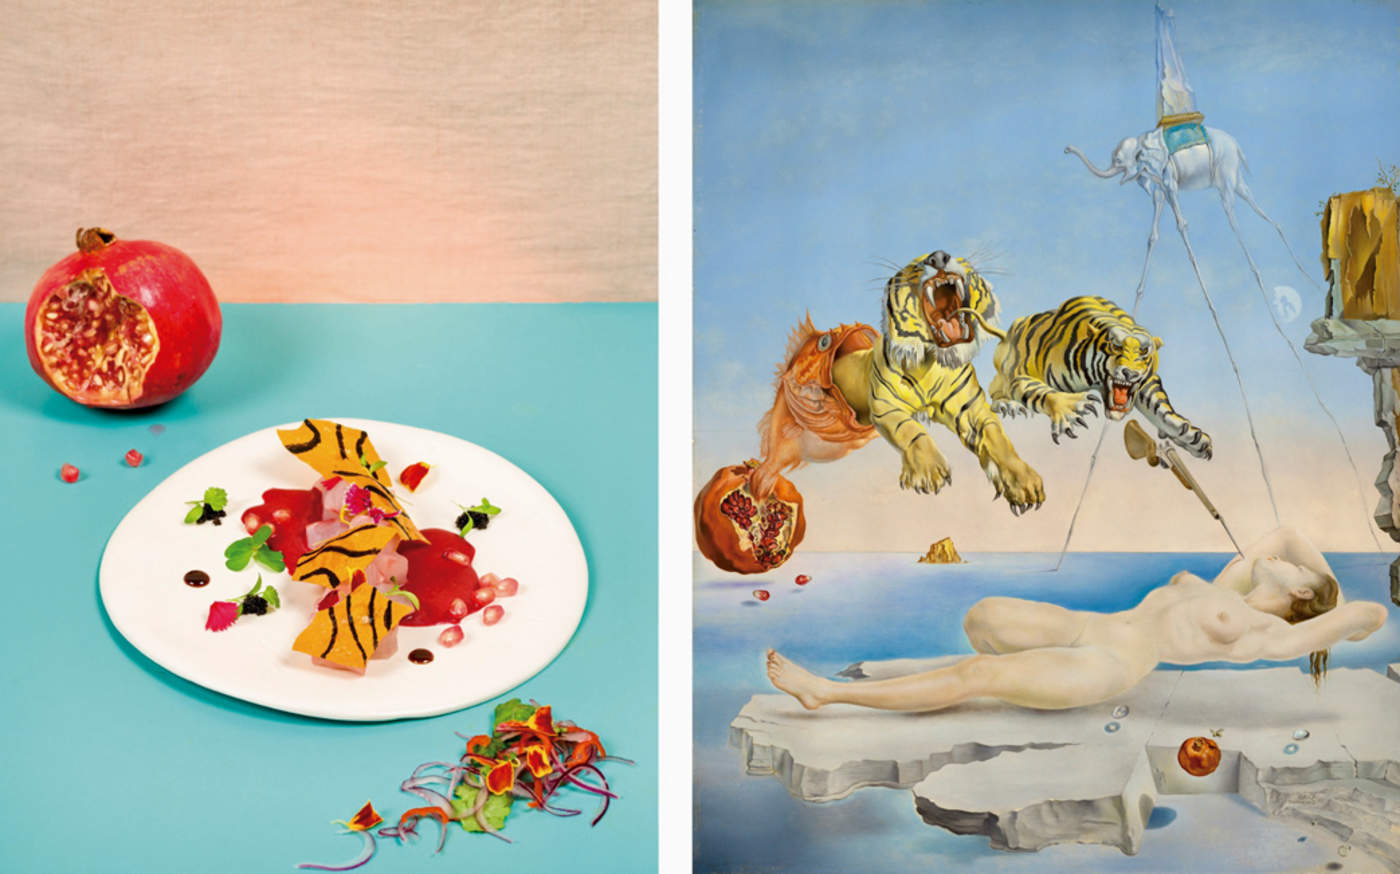 Platillo de Roberto Martínez Foronda basado en la obra Sueño causado por el vuelo de una abeja alrededor de una granada un instante antes de despertar (Salvador Dalí). Foto: Museo Nacional Thyssen-Bornemisza.